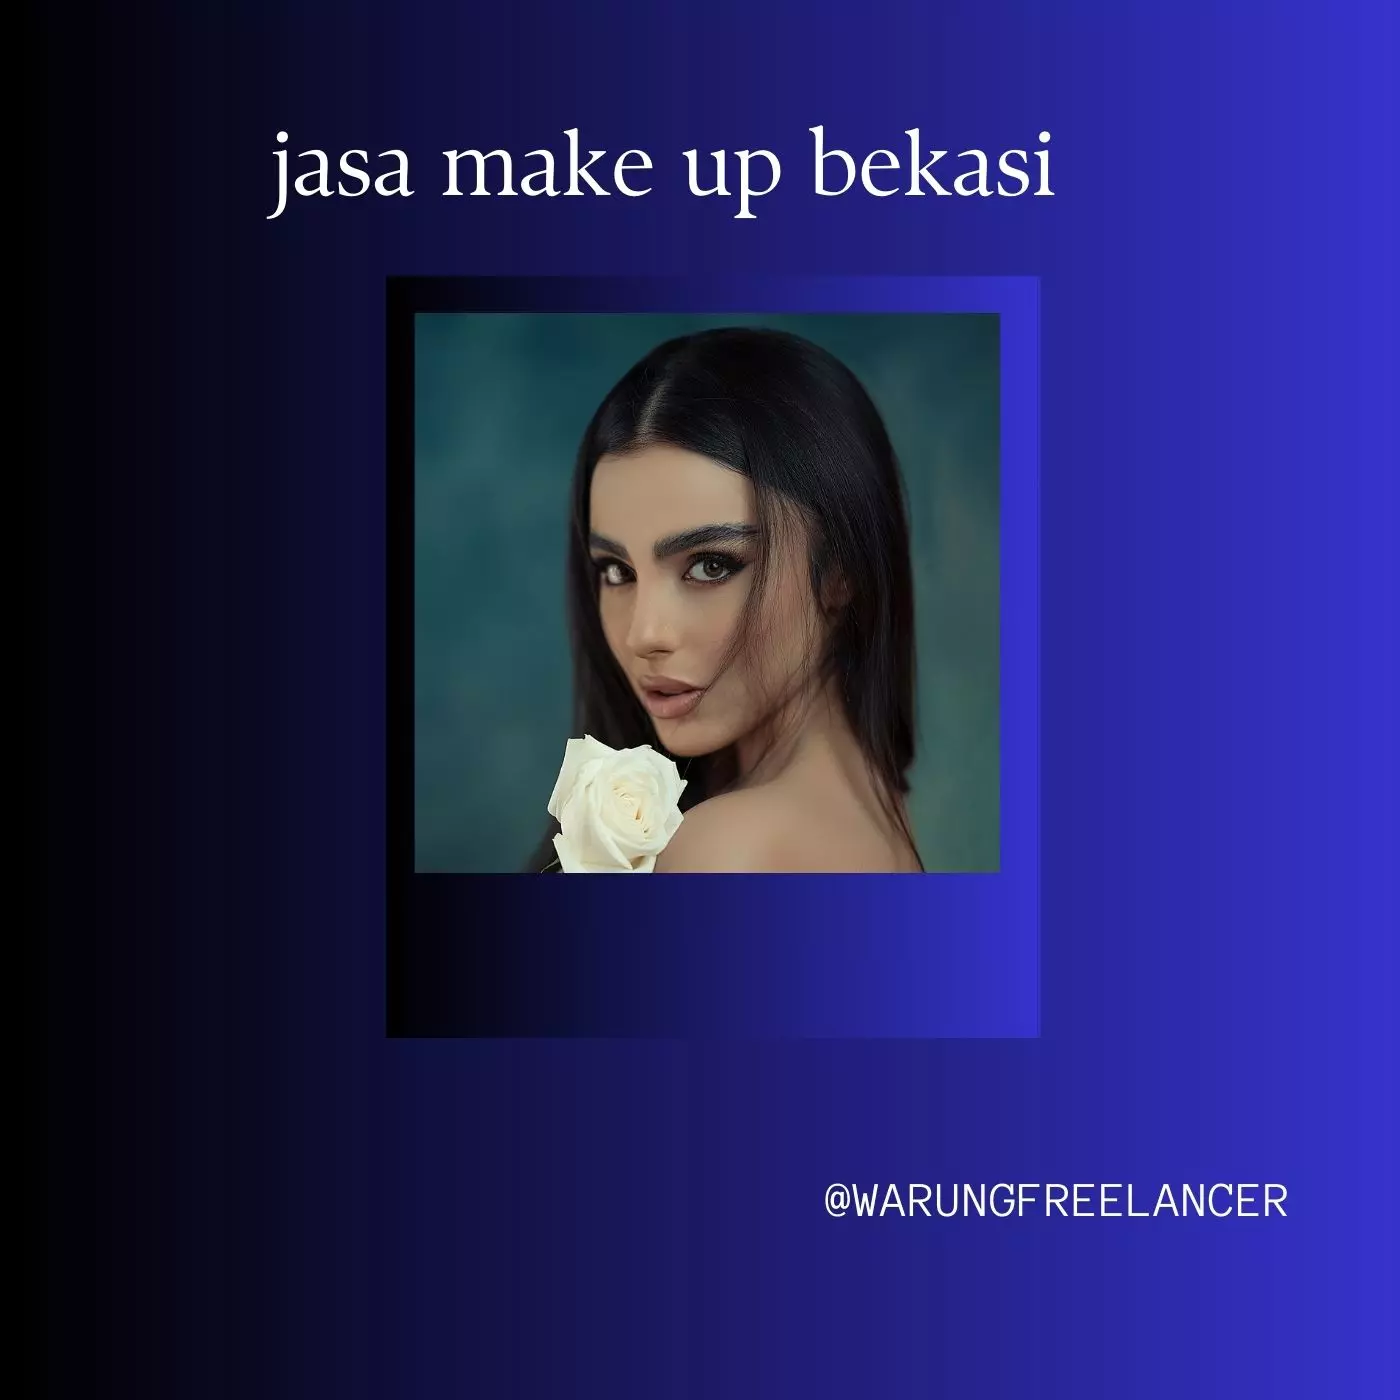 Jasa Make Up Bekasi